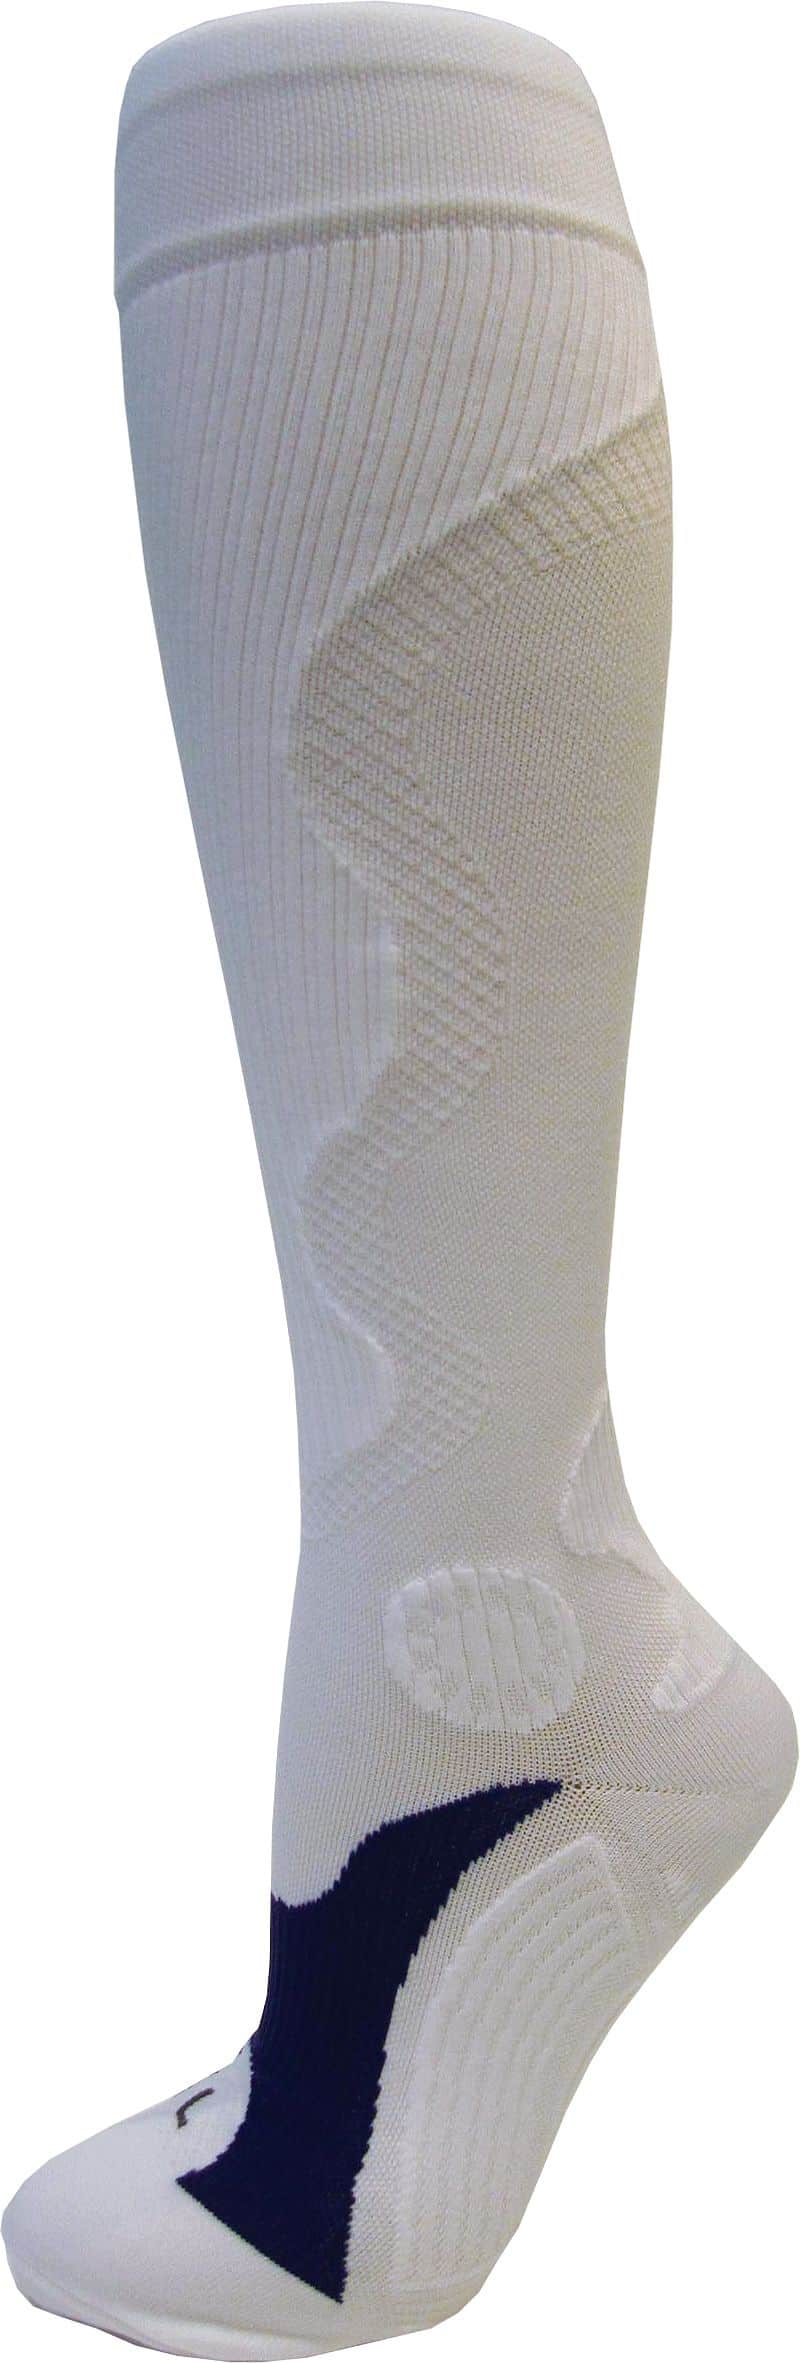 Rulyt Kompresní sportovní ponožky WAVE, bílé Bota velikost: XL